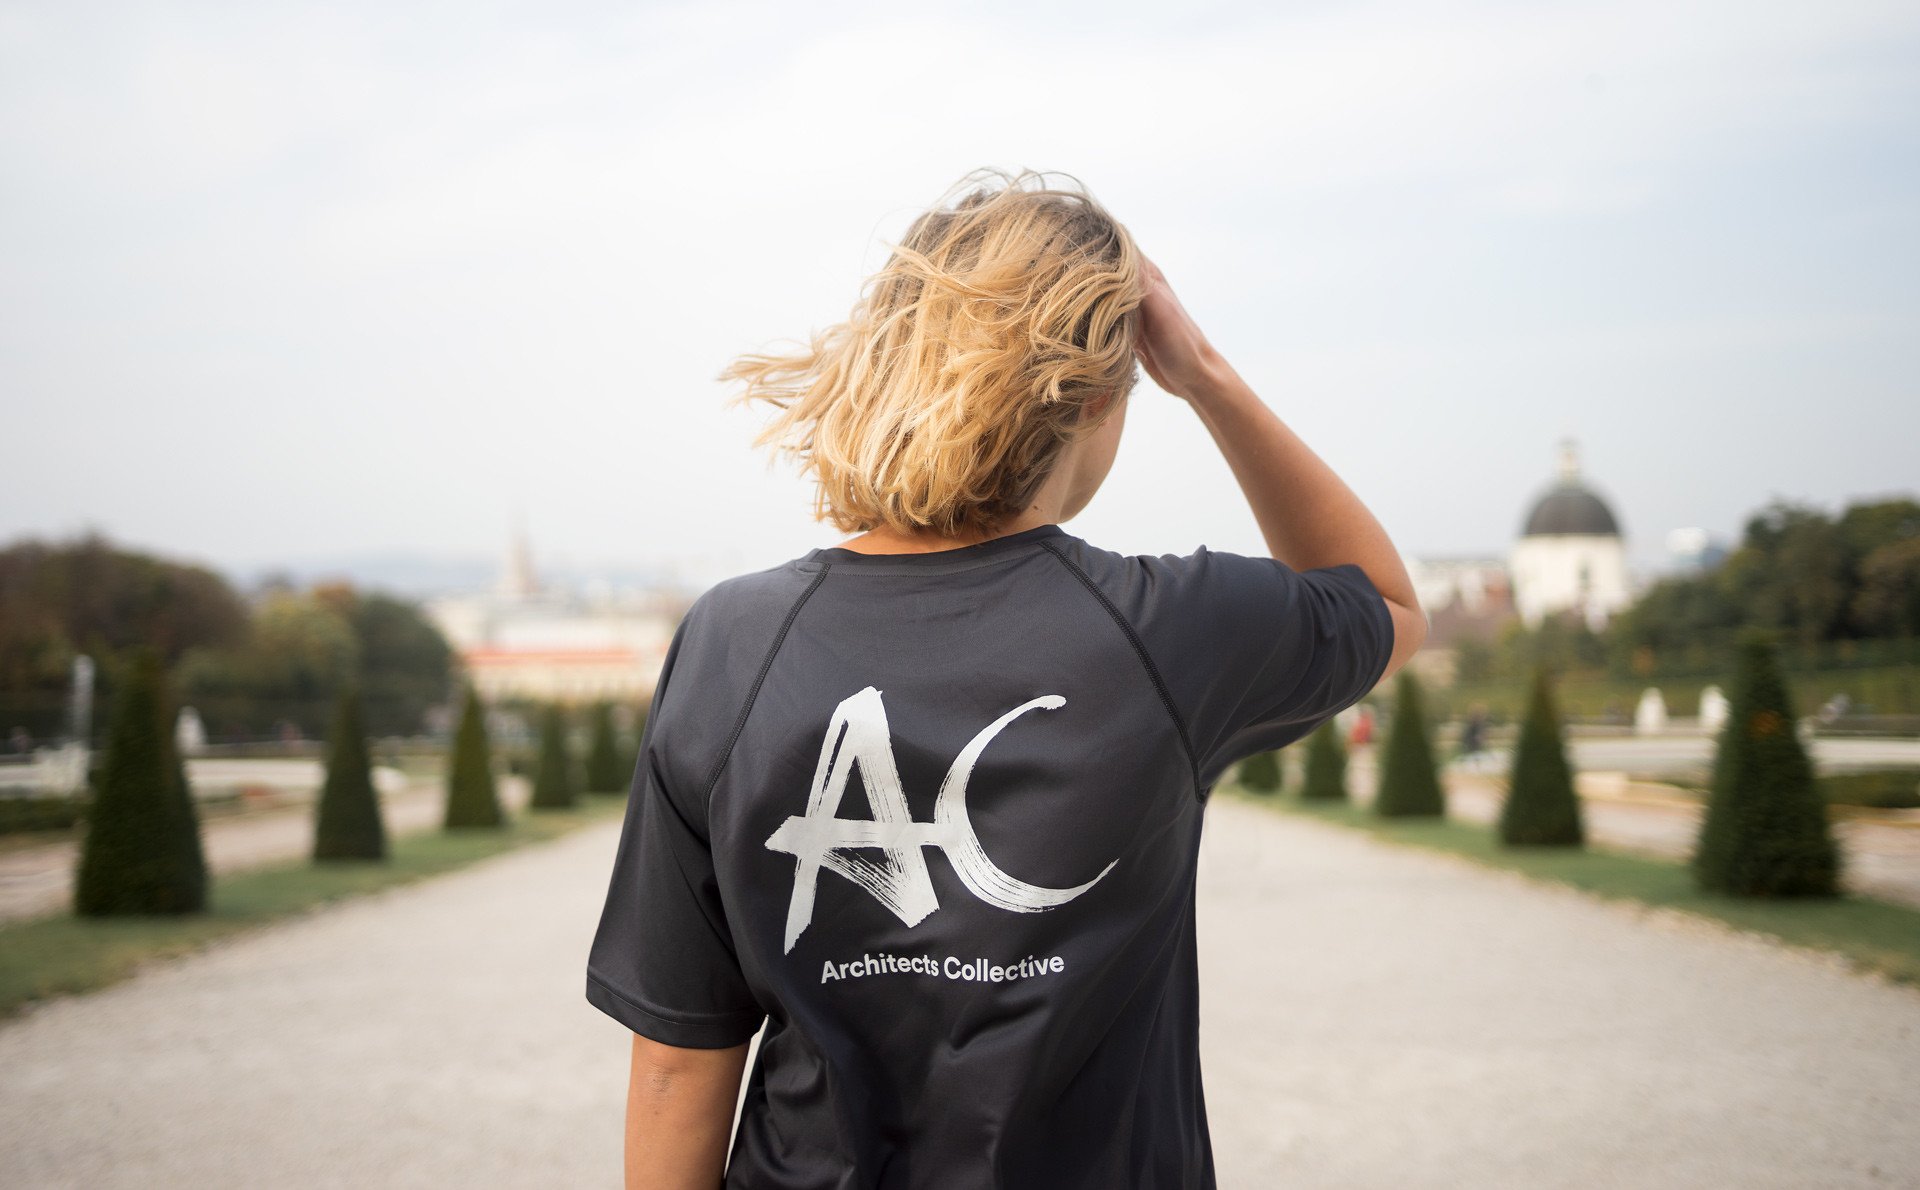 Das handschriftliche Branding des Architekturbüros mit den Kürzeln AC in weiß für Architects Collective auf einem schwarzen T-Shirt